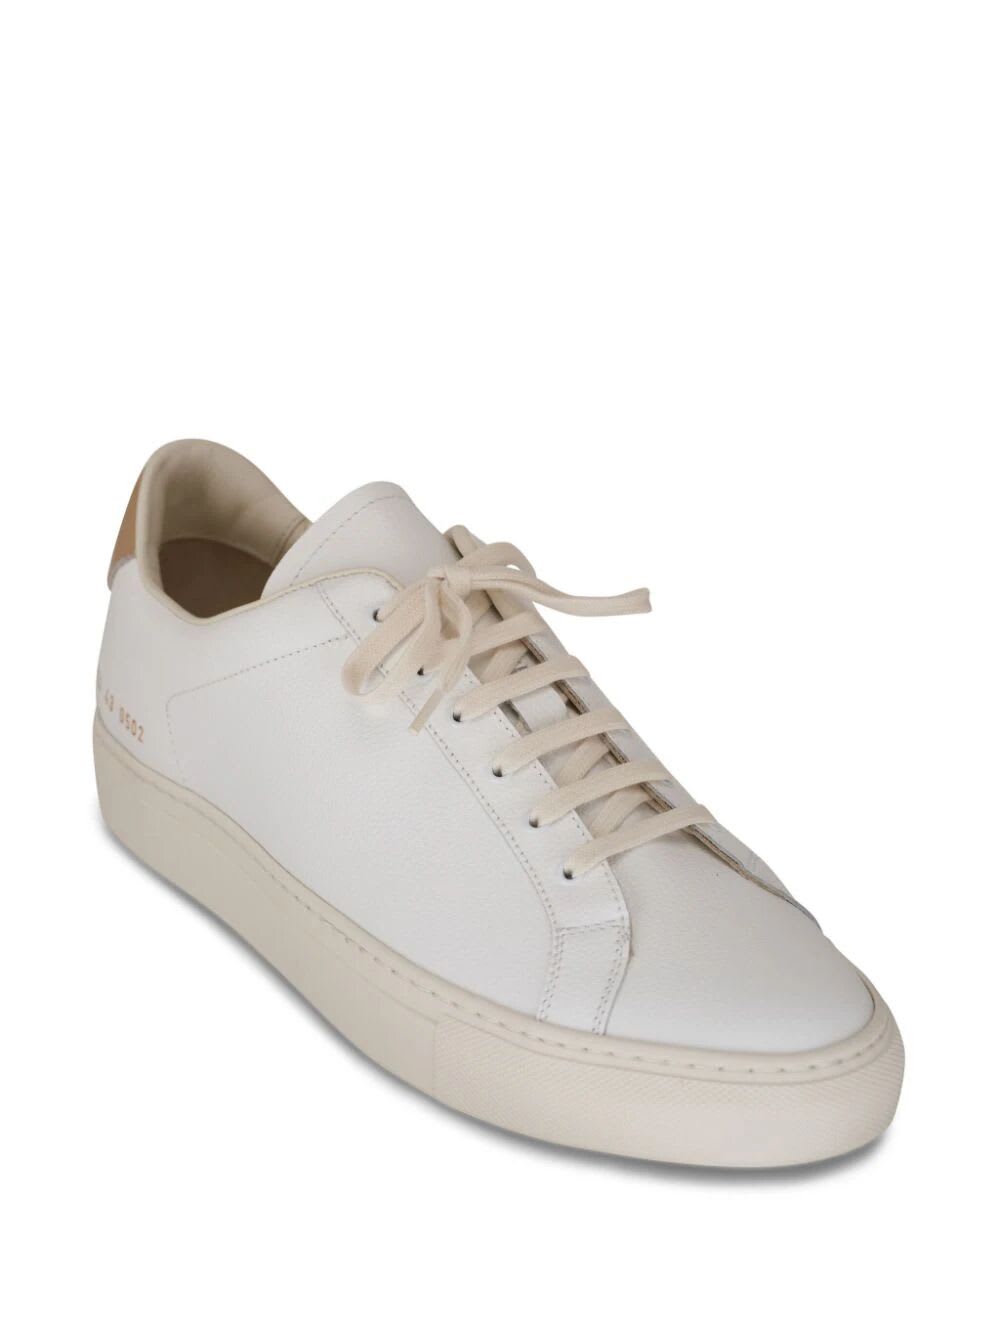 Shop Common Projects Retro Bumpy Sneaker In White Tan